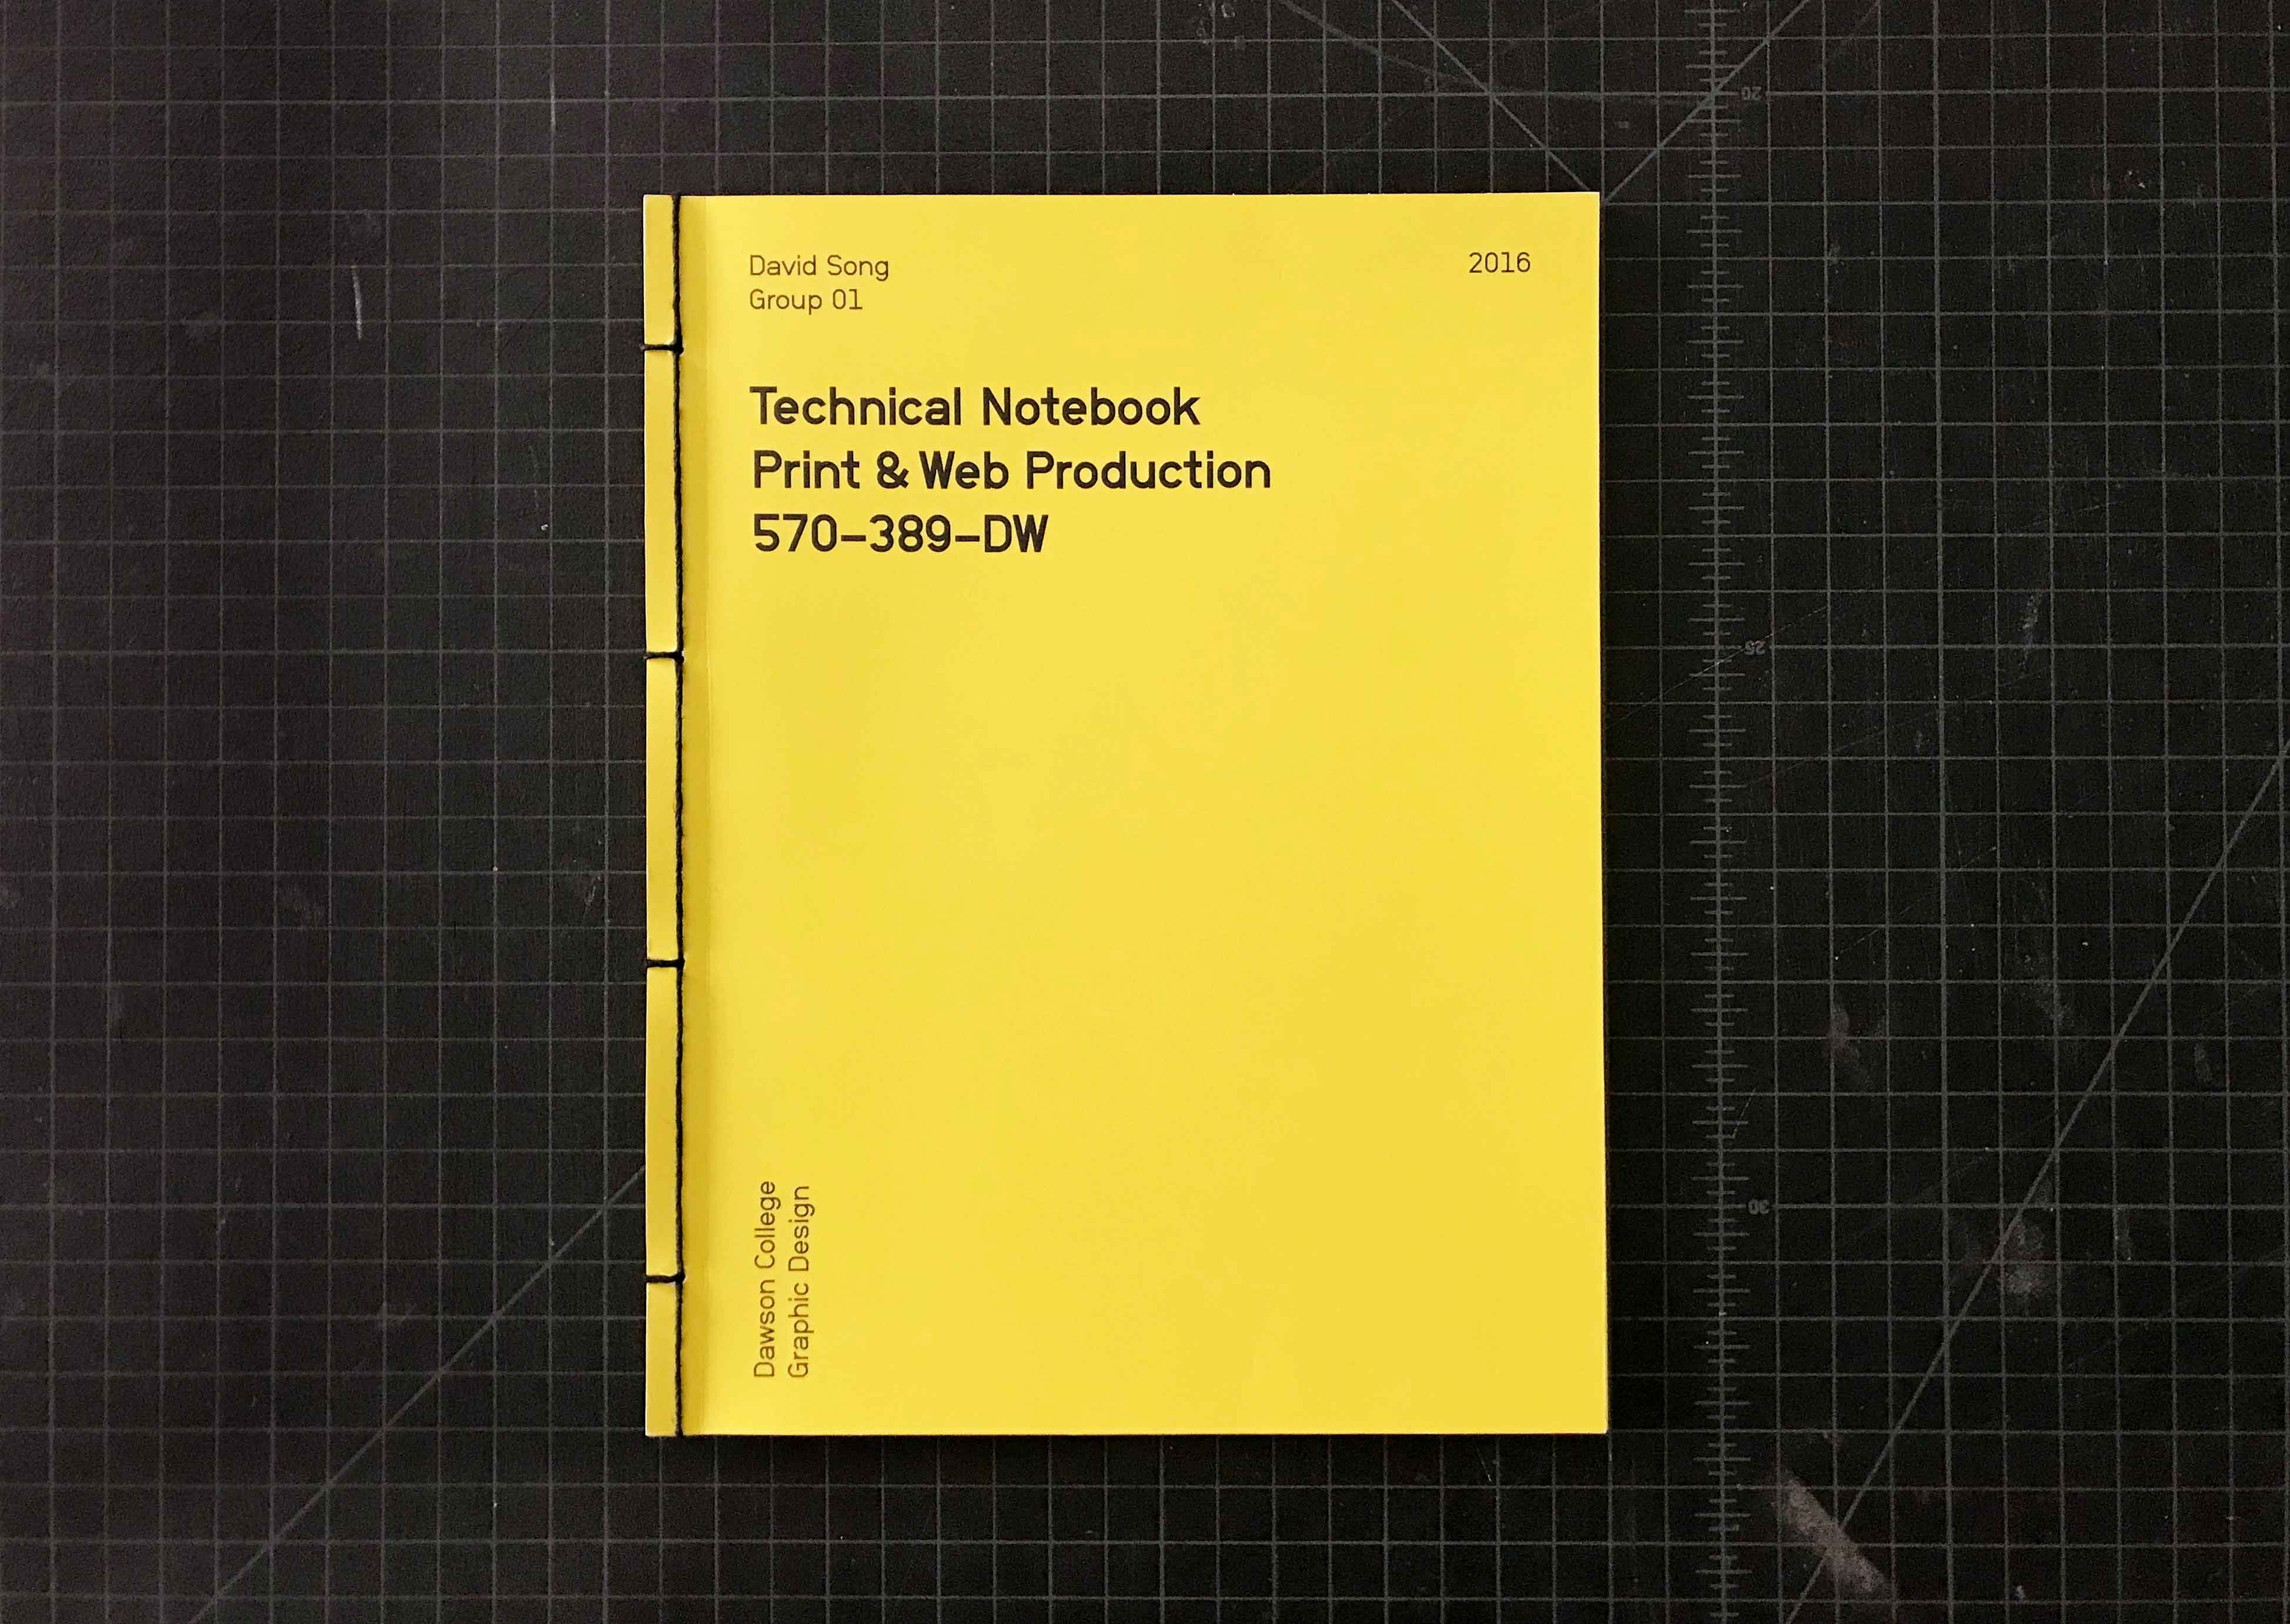 Technical Notebook